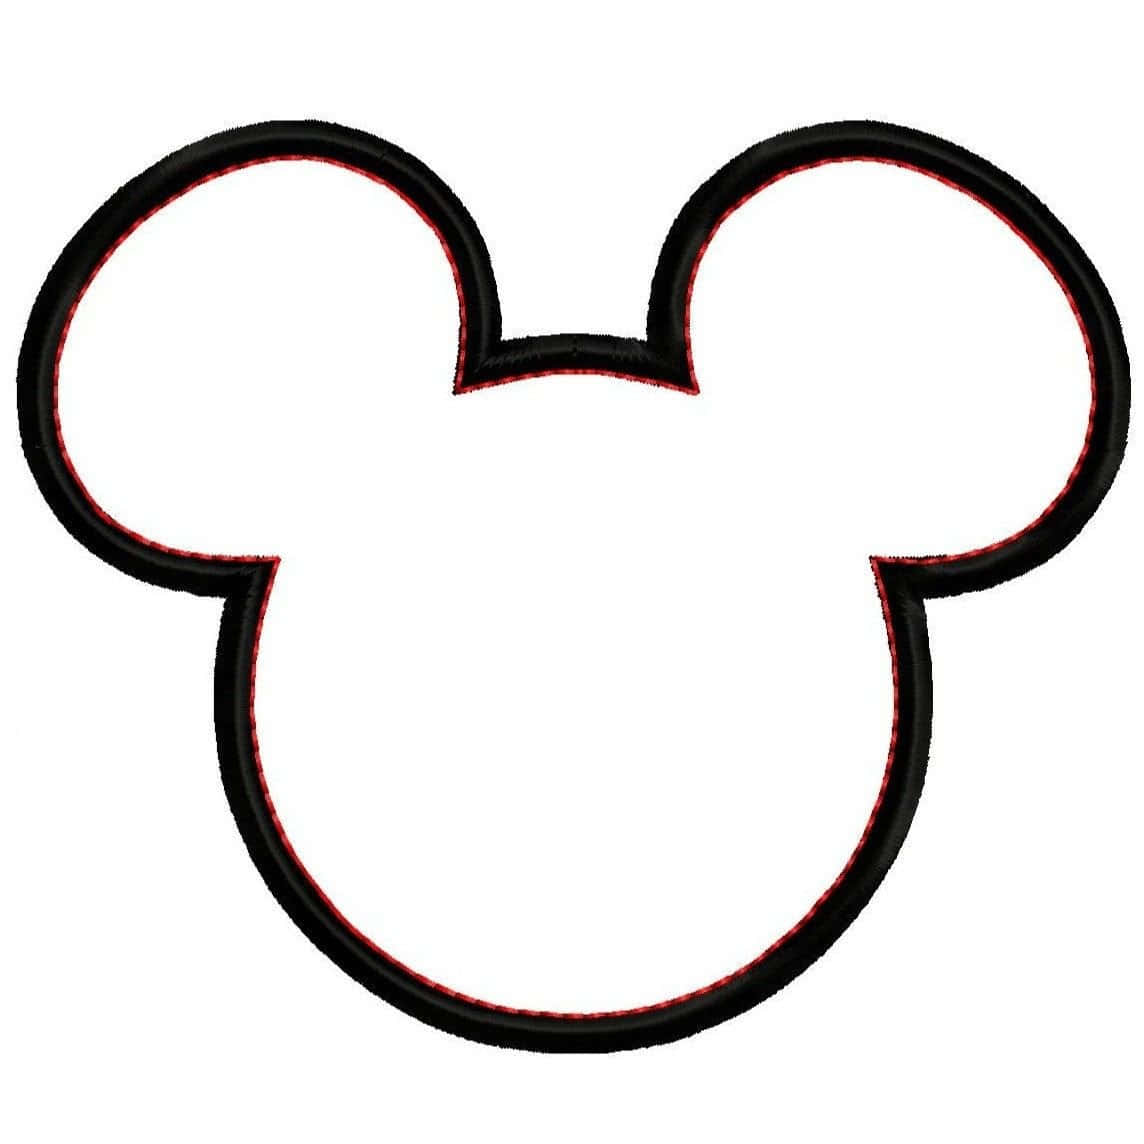 ¡muestratu Espíritu Disney Con Orejas De Mickey Mouse! Fondo de pantalla